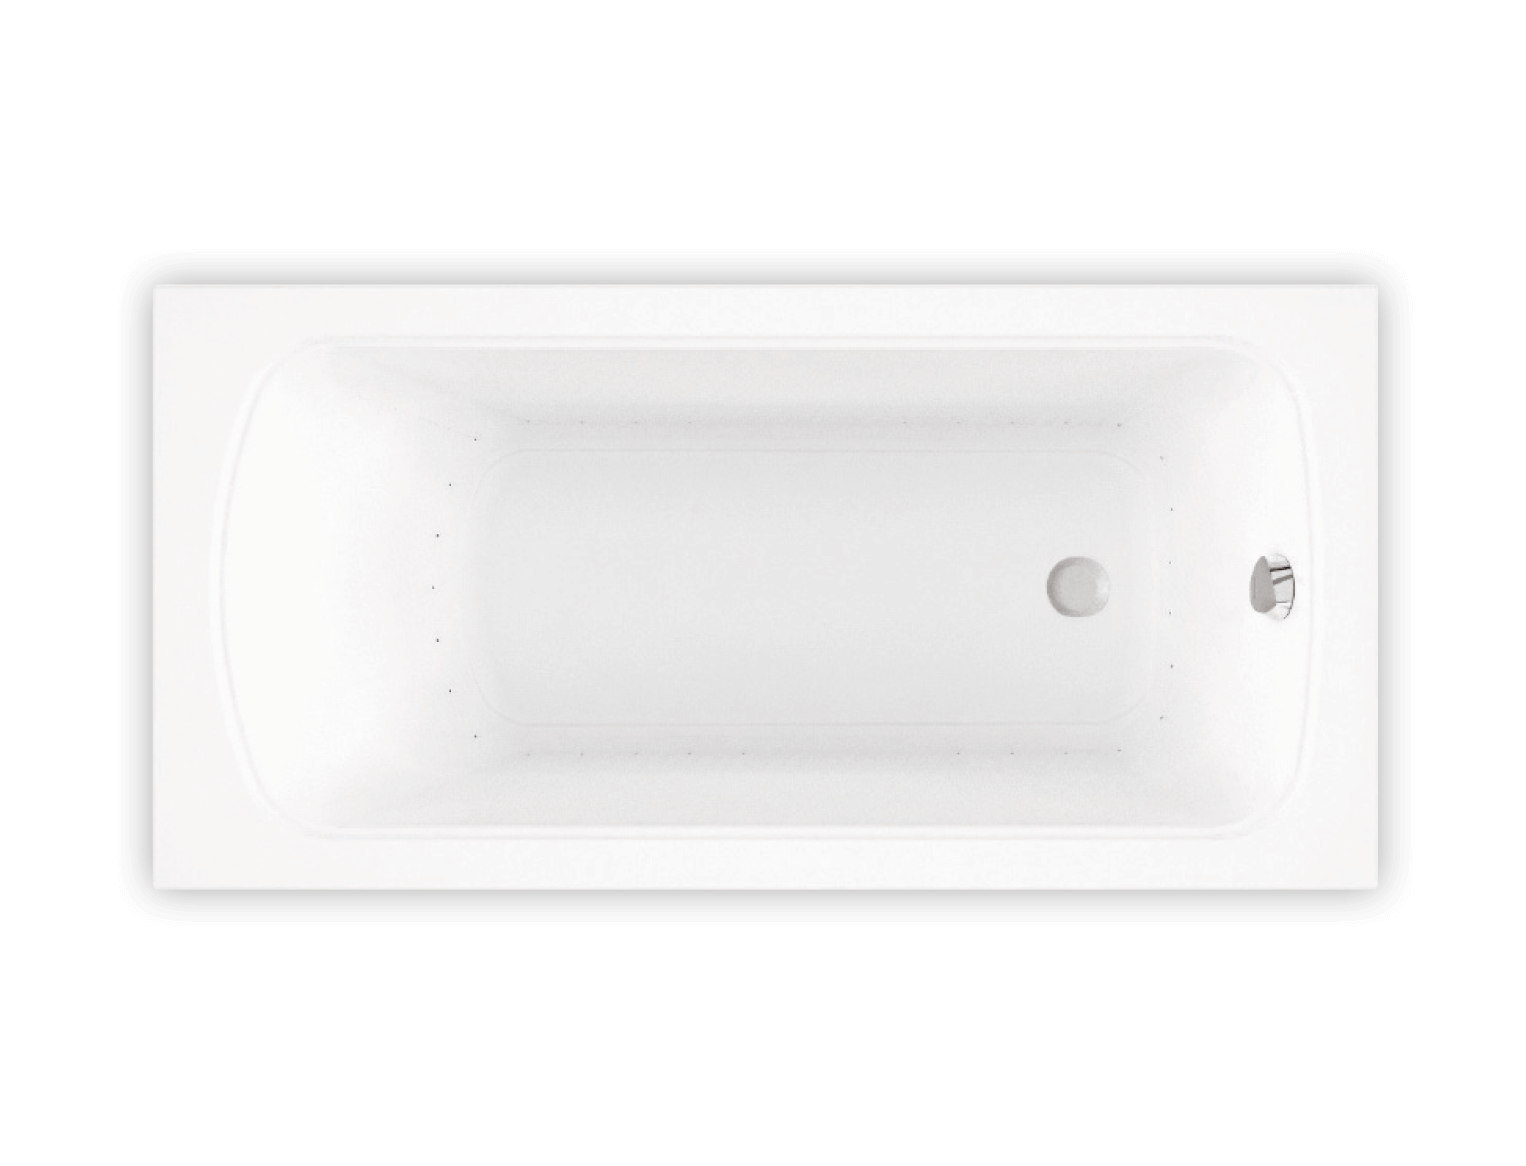 Bainultra Meridian® 6030 alcove drop-in air jet bathtub for your modern bathroom